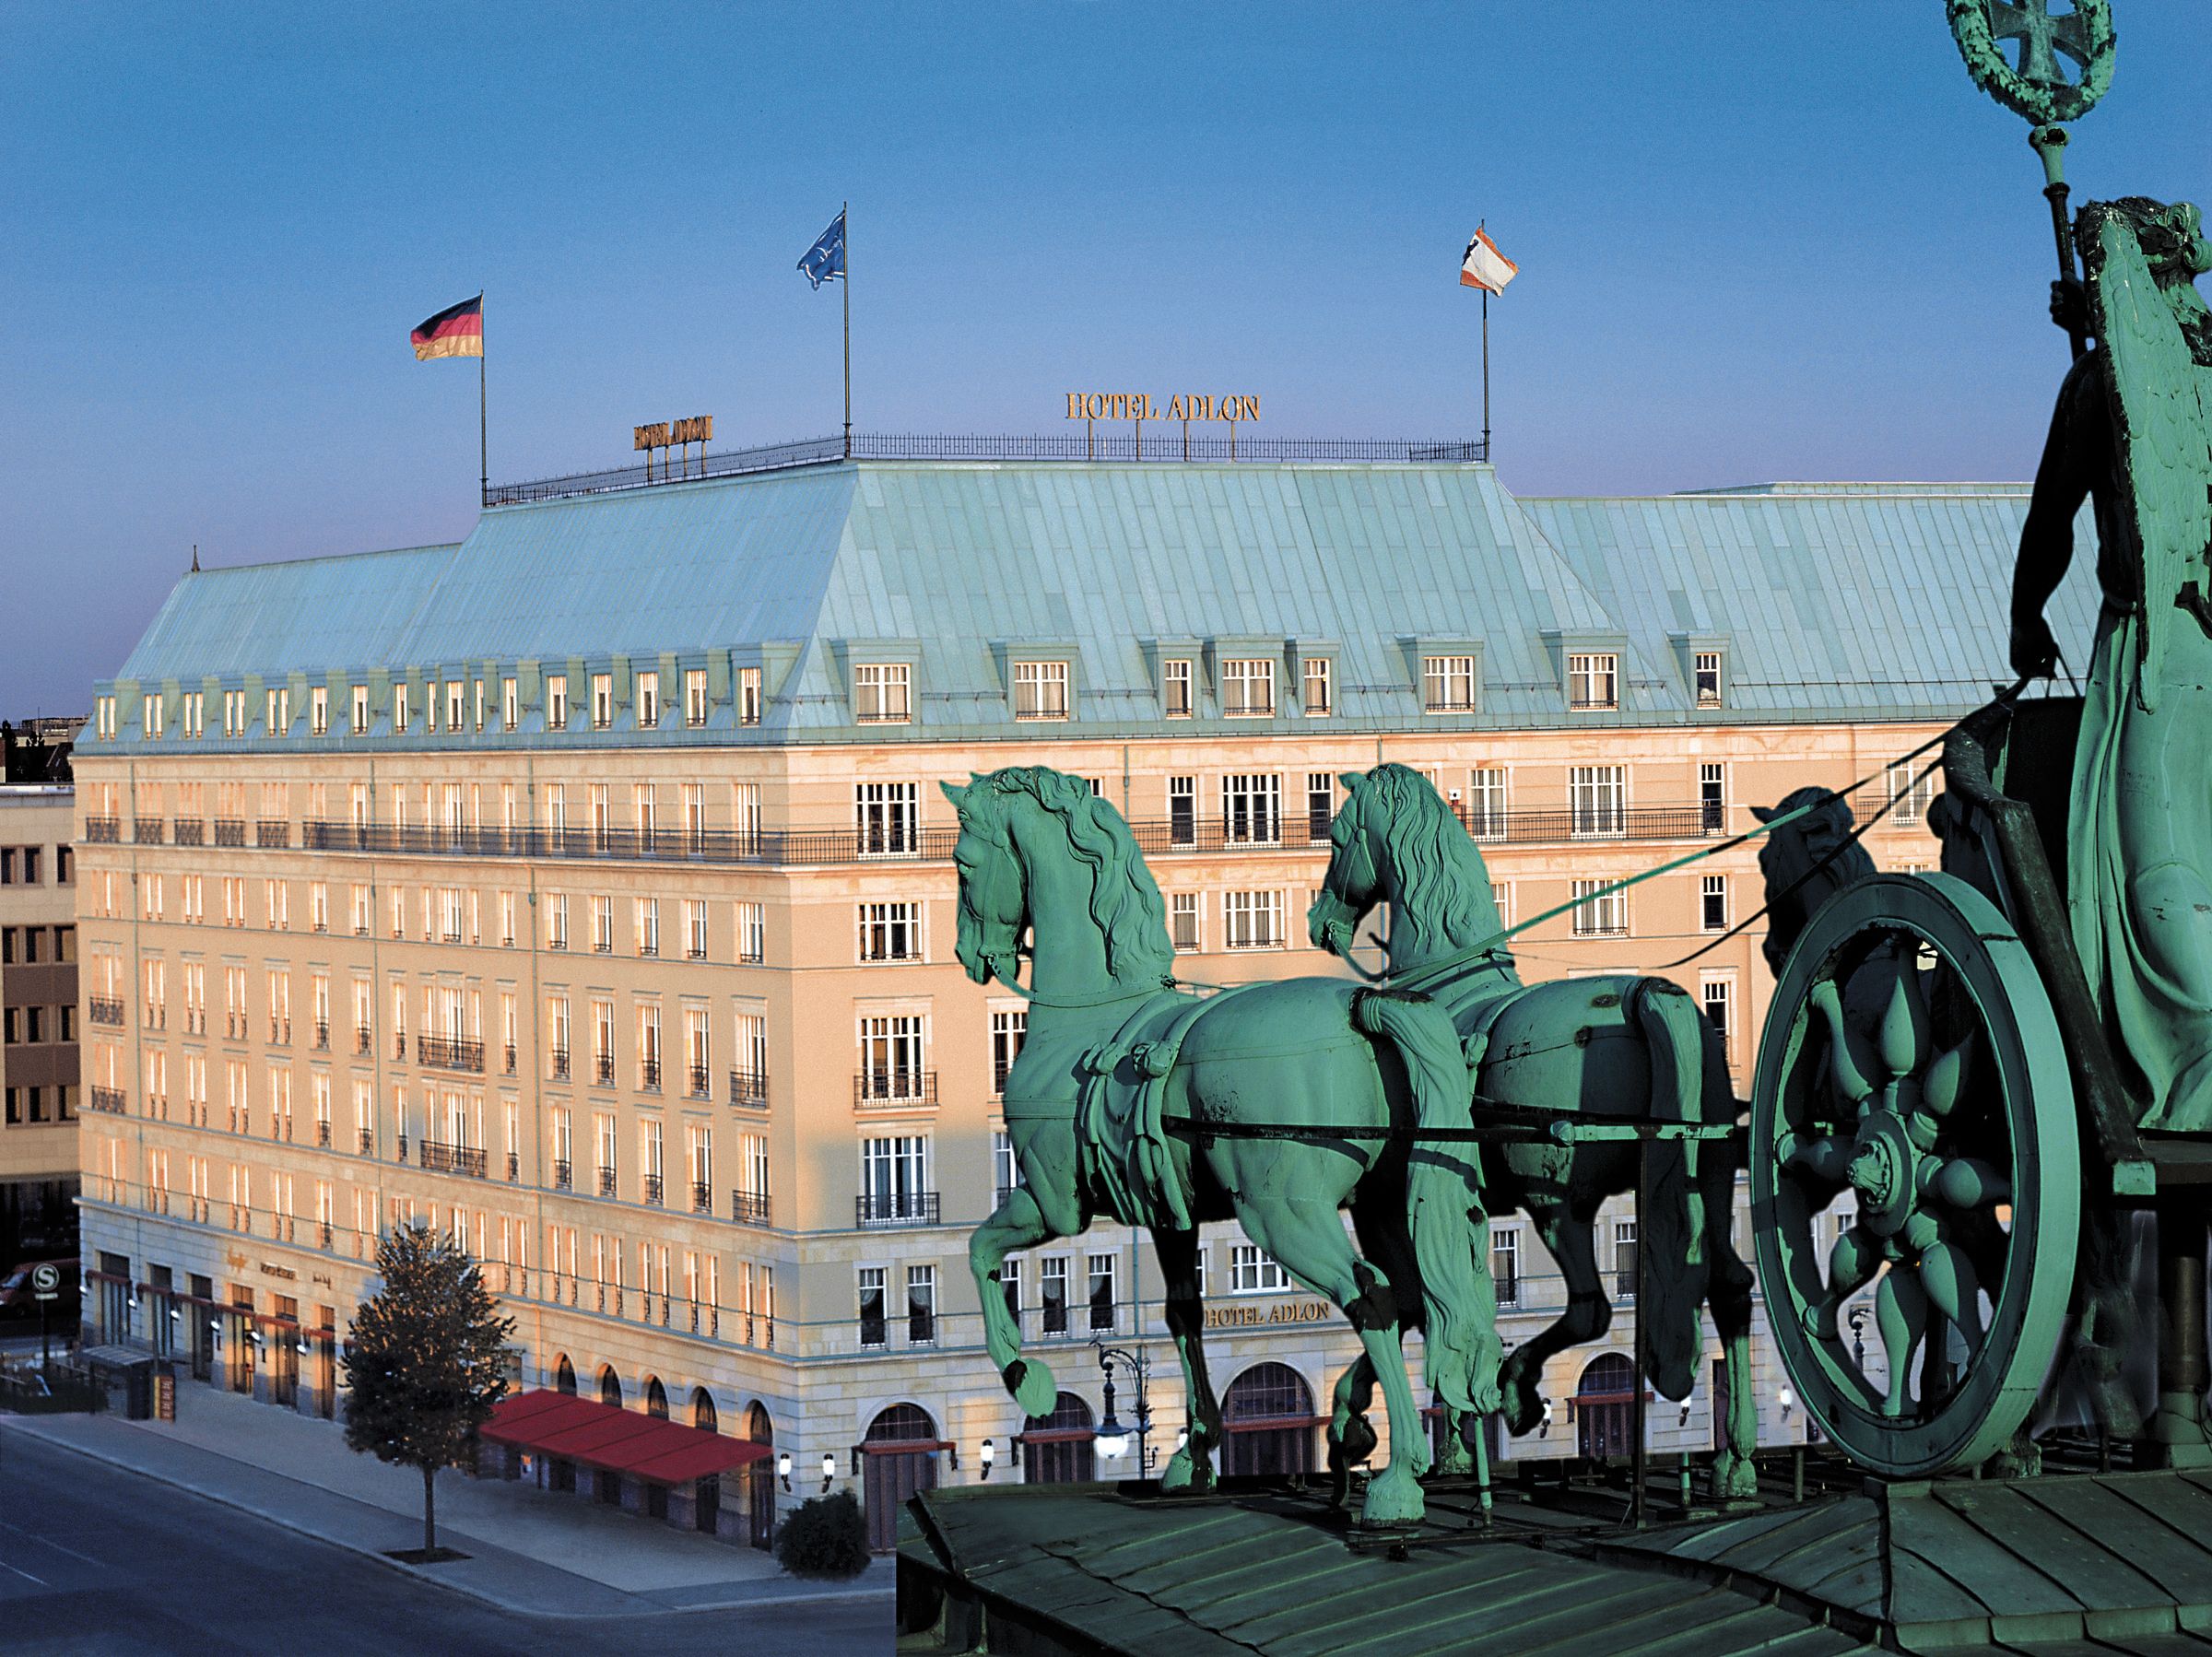 Hotel Adlon Kempinski Berlin: Schönstes und erfolgreichstes Luxushotel Deutschlands